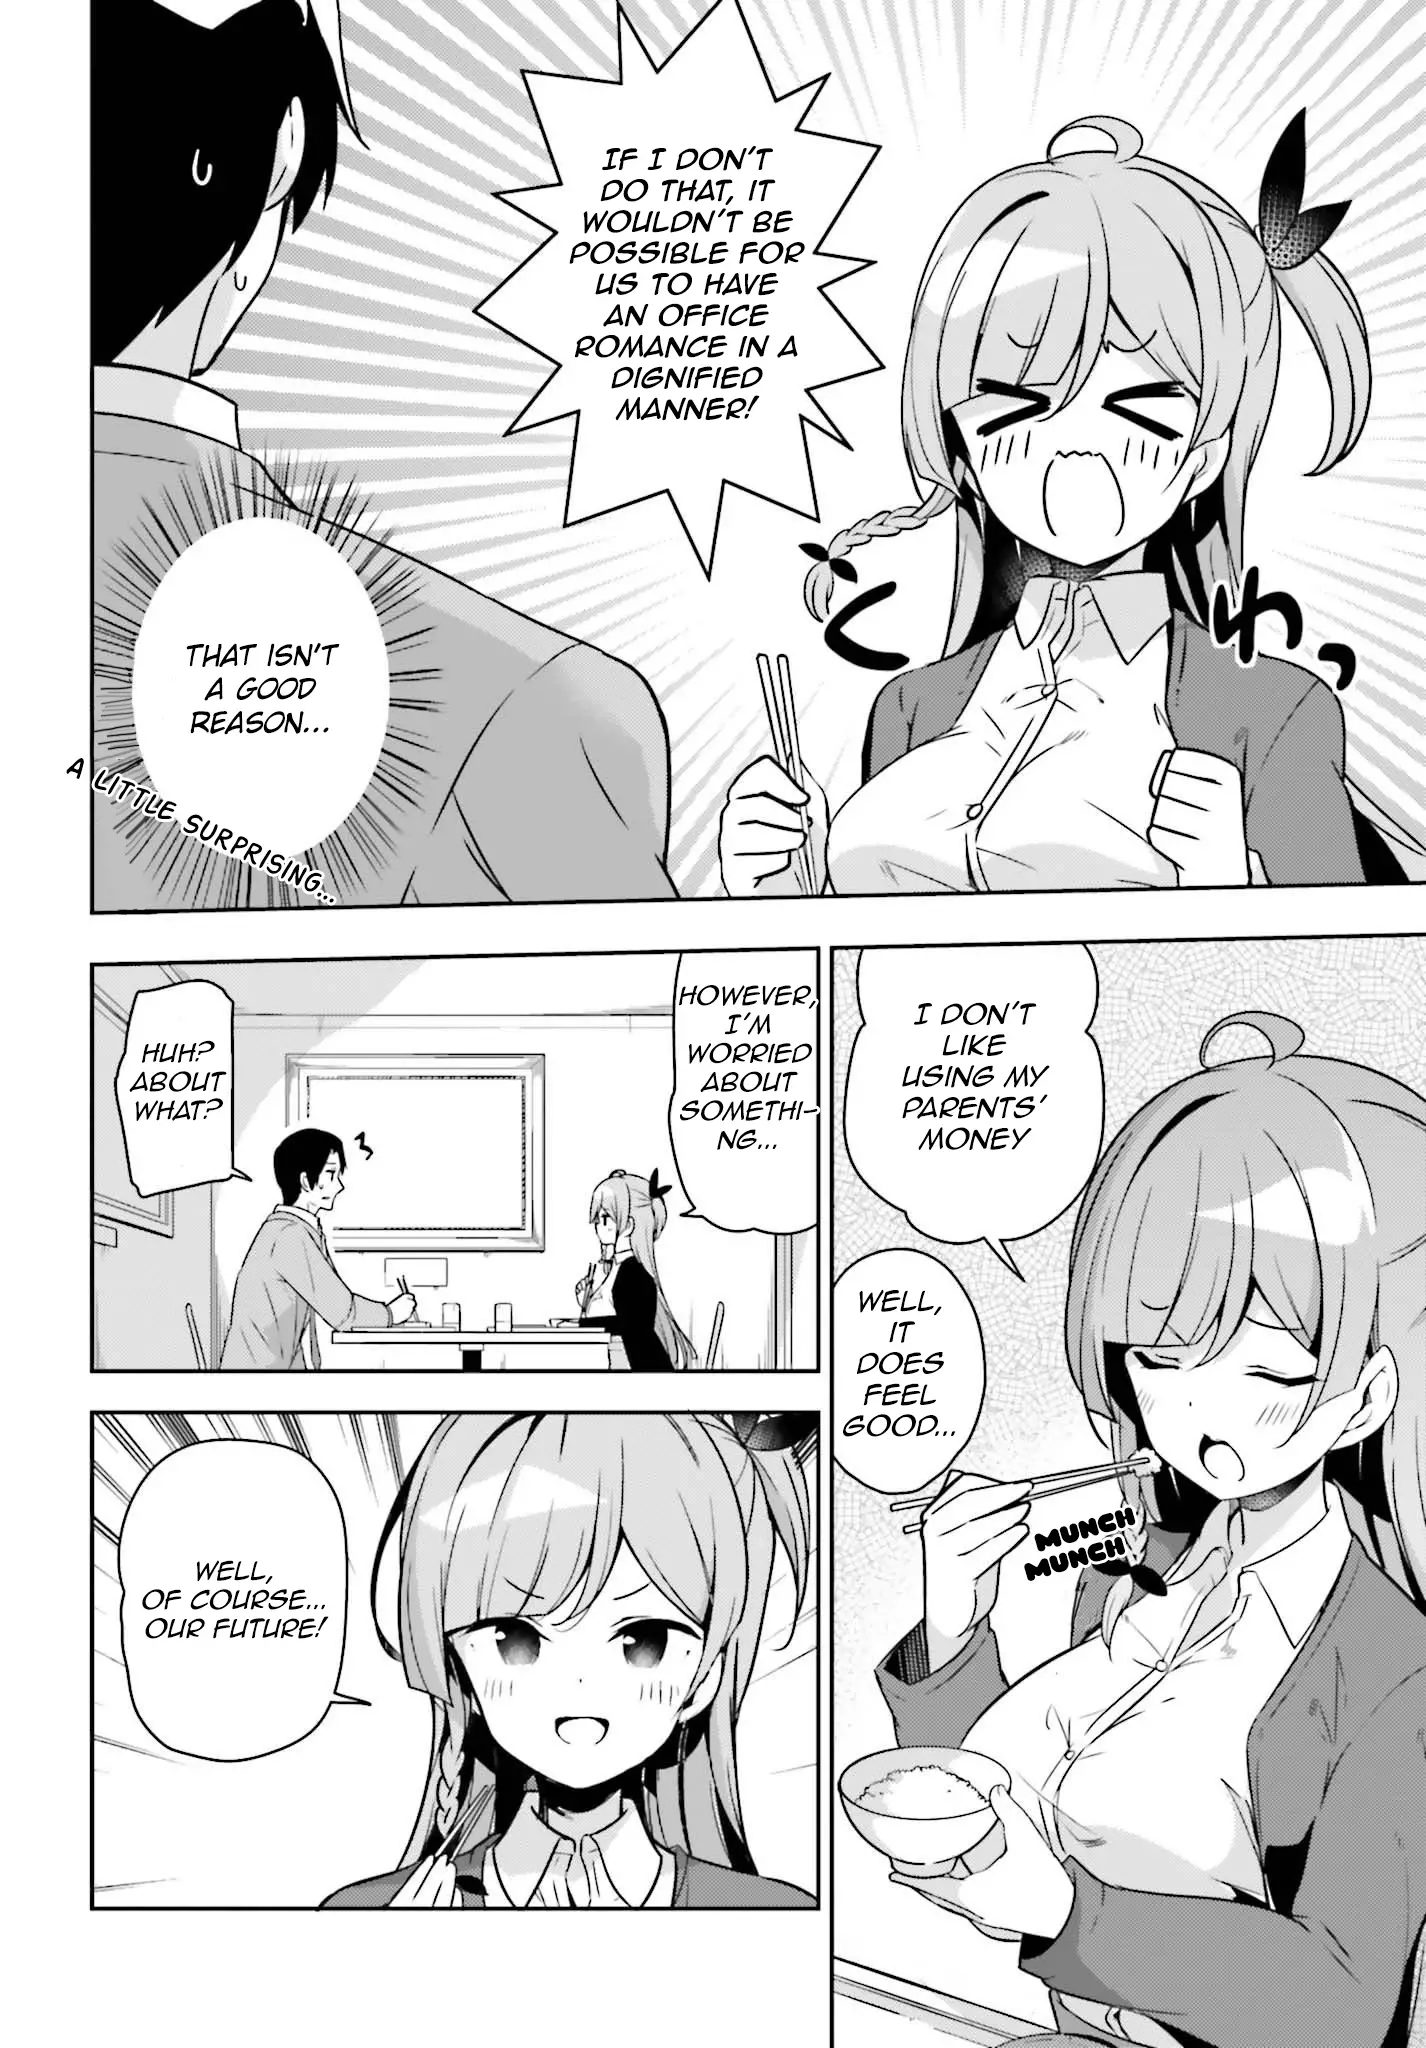 Senpai! Let's Have An Office Romance ♪ - 8 page 5